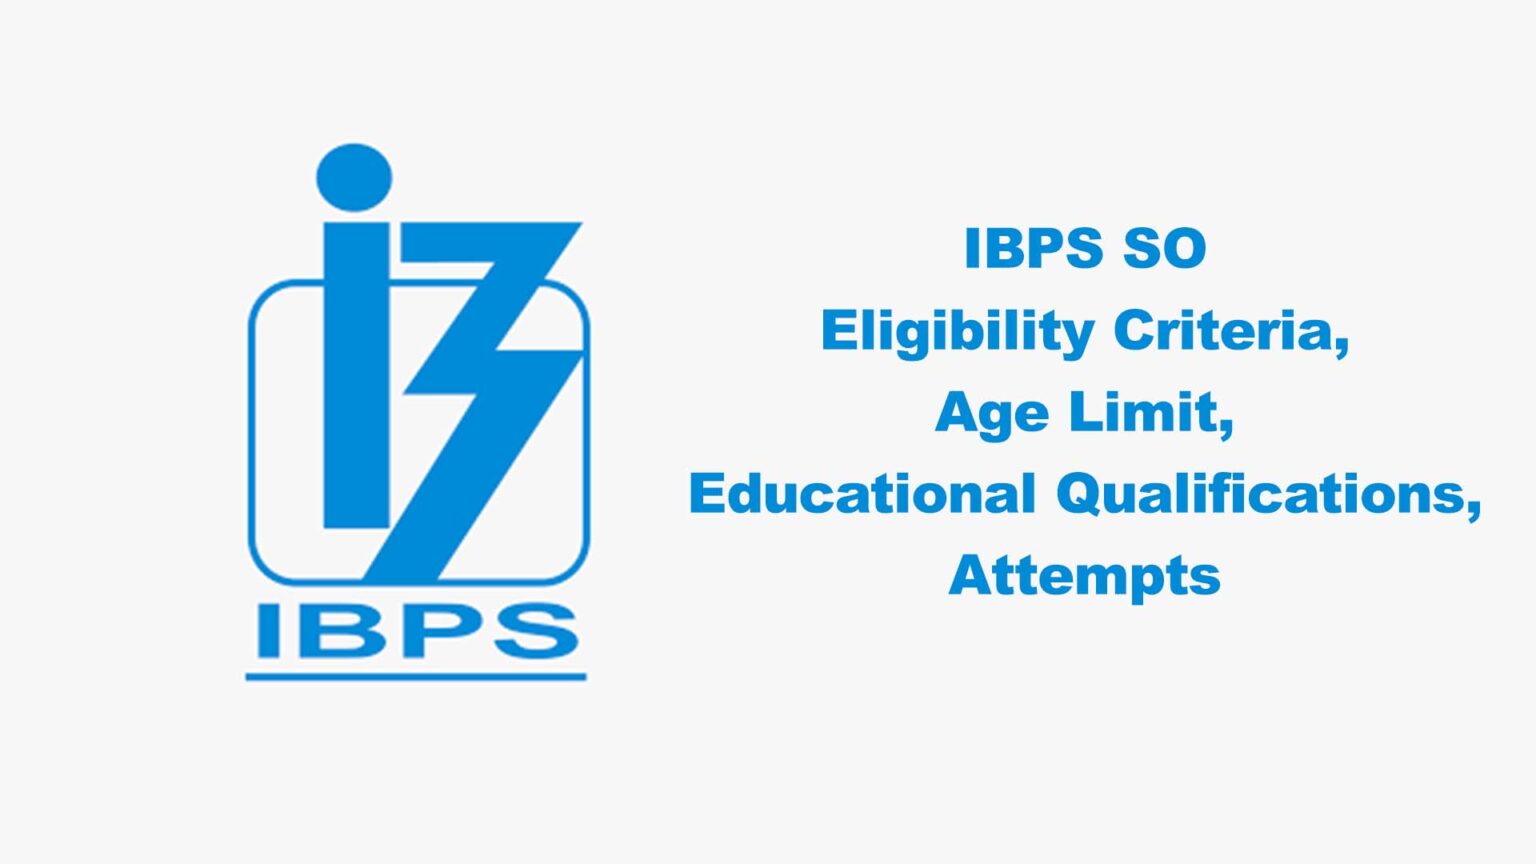 IBPS SO examination